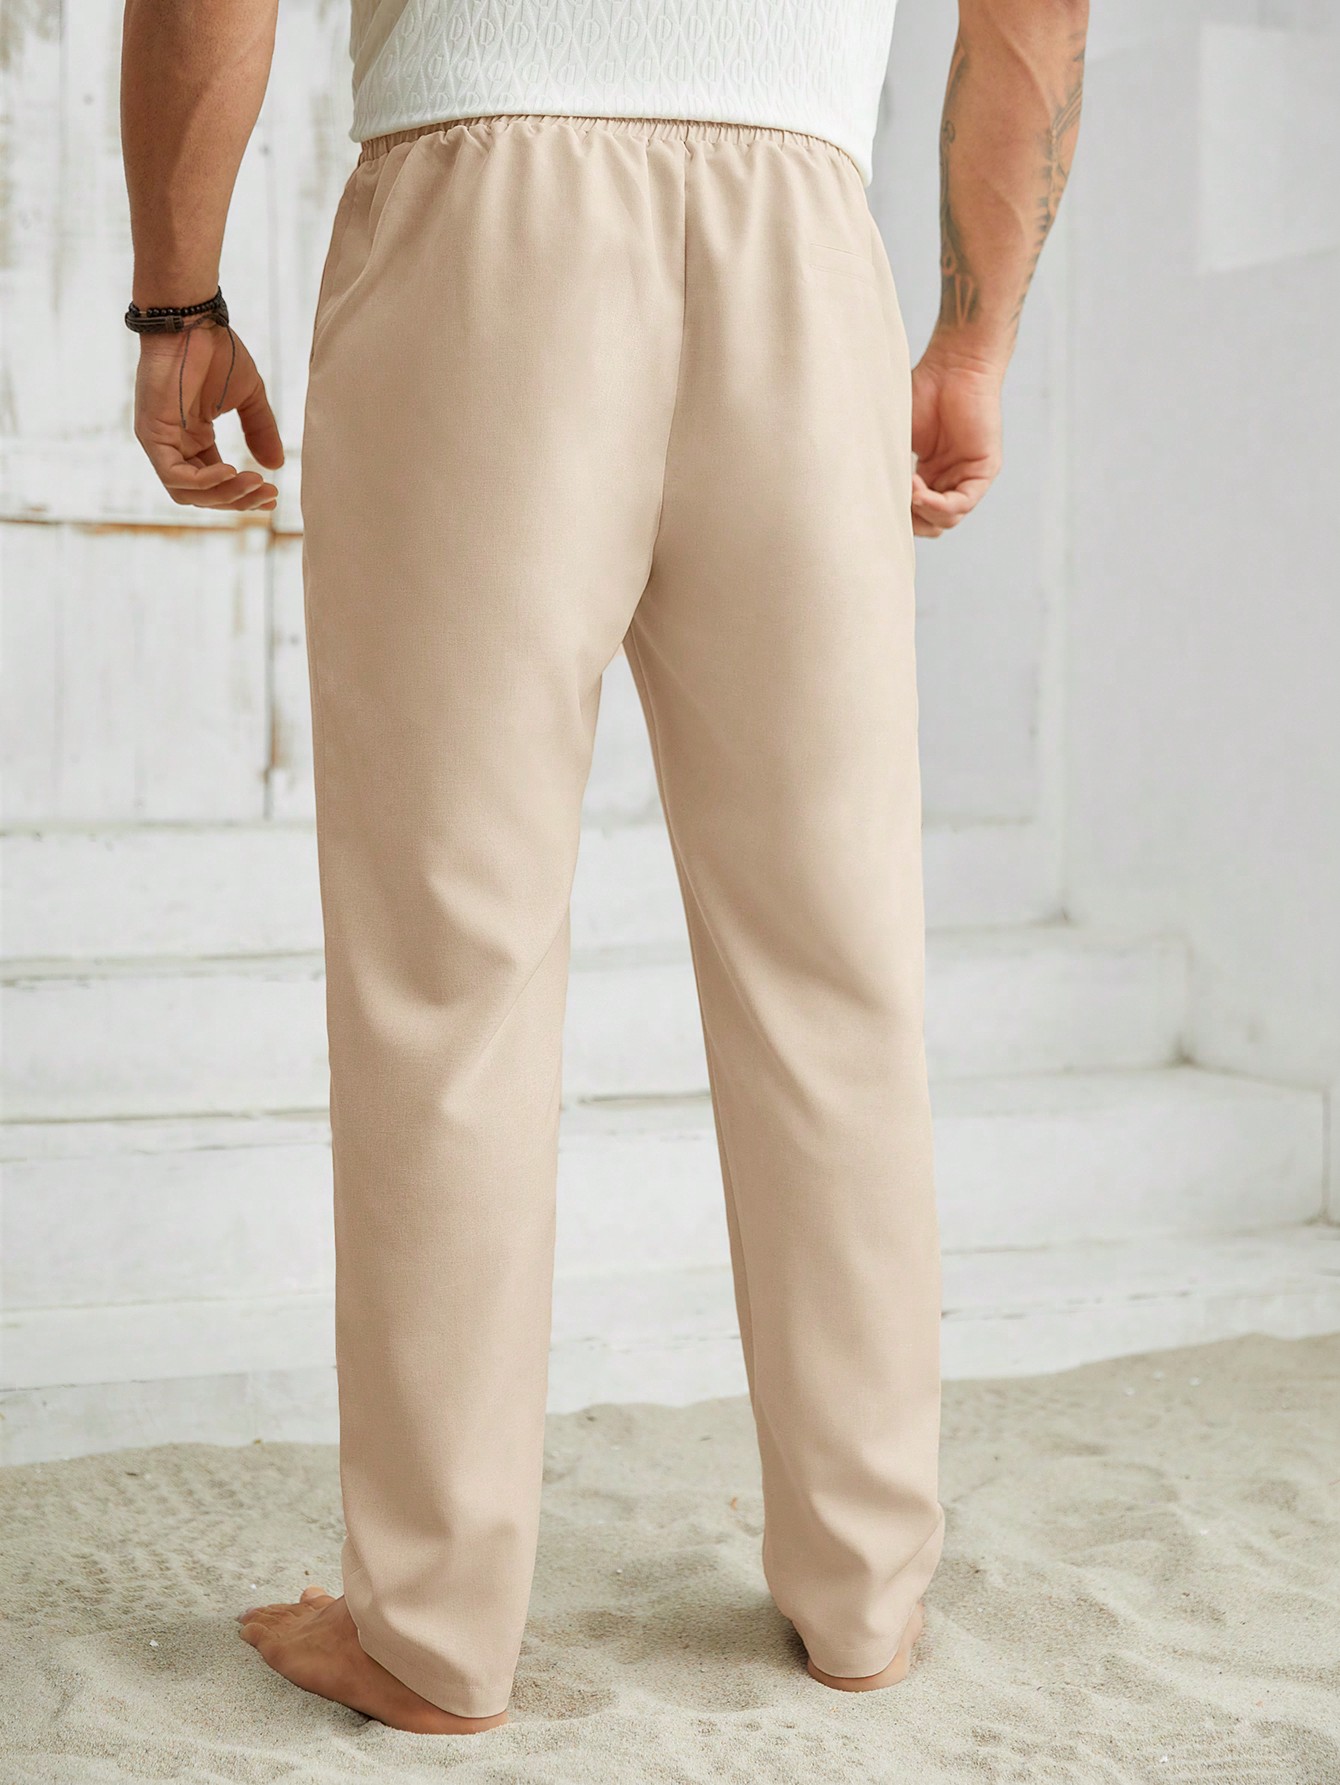 Мужские тканые прямые повседневные длинные брюки больших размеров Manfinity Homme больших размеров, абрикос цена и фото